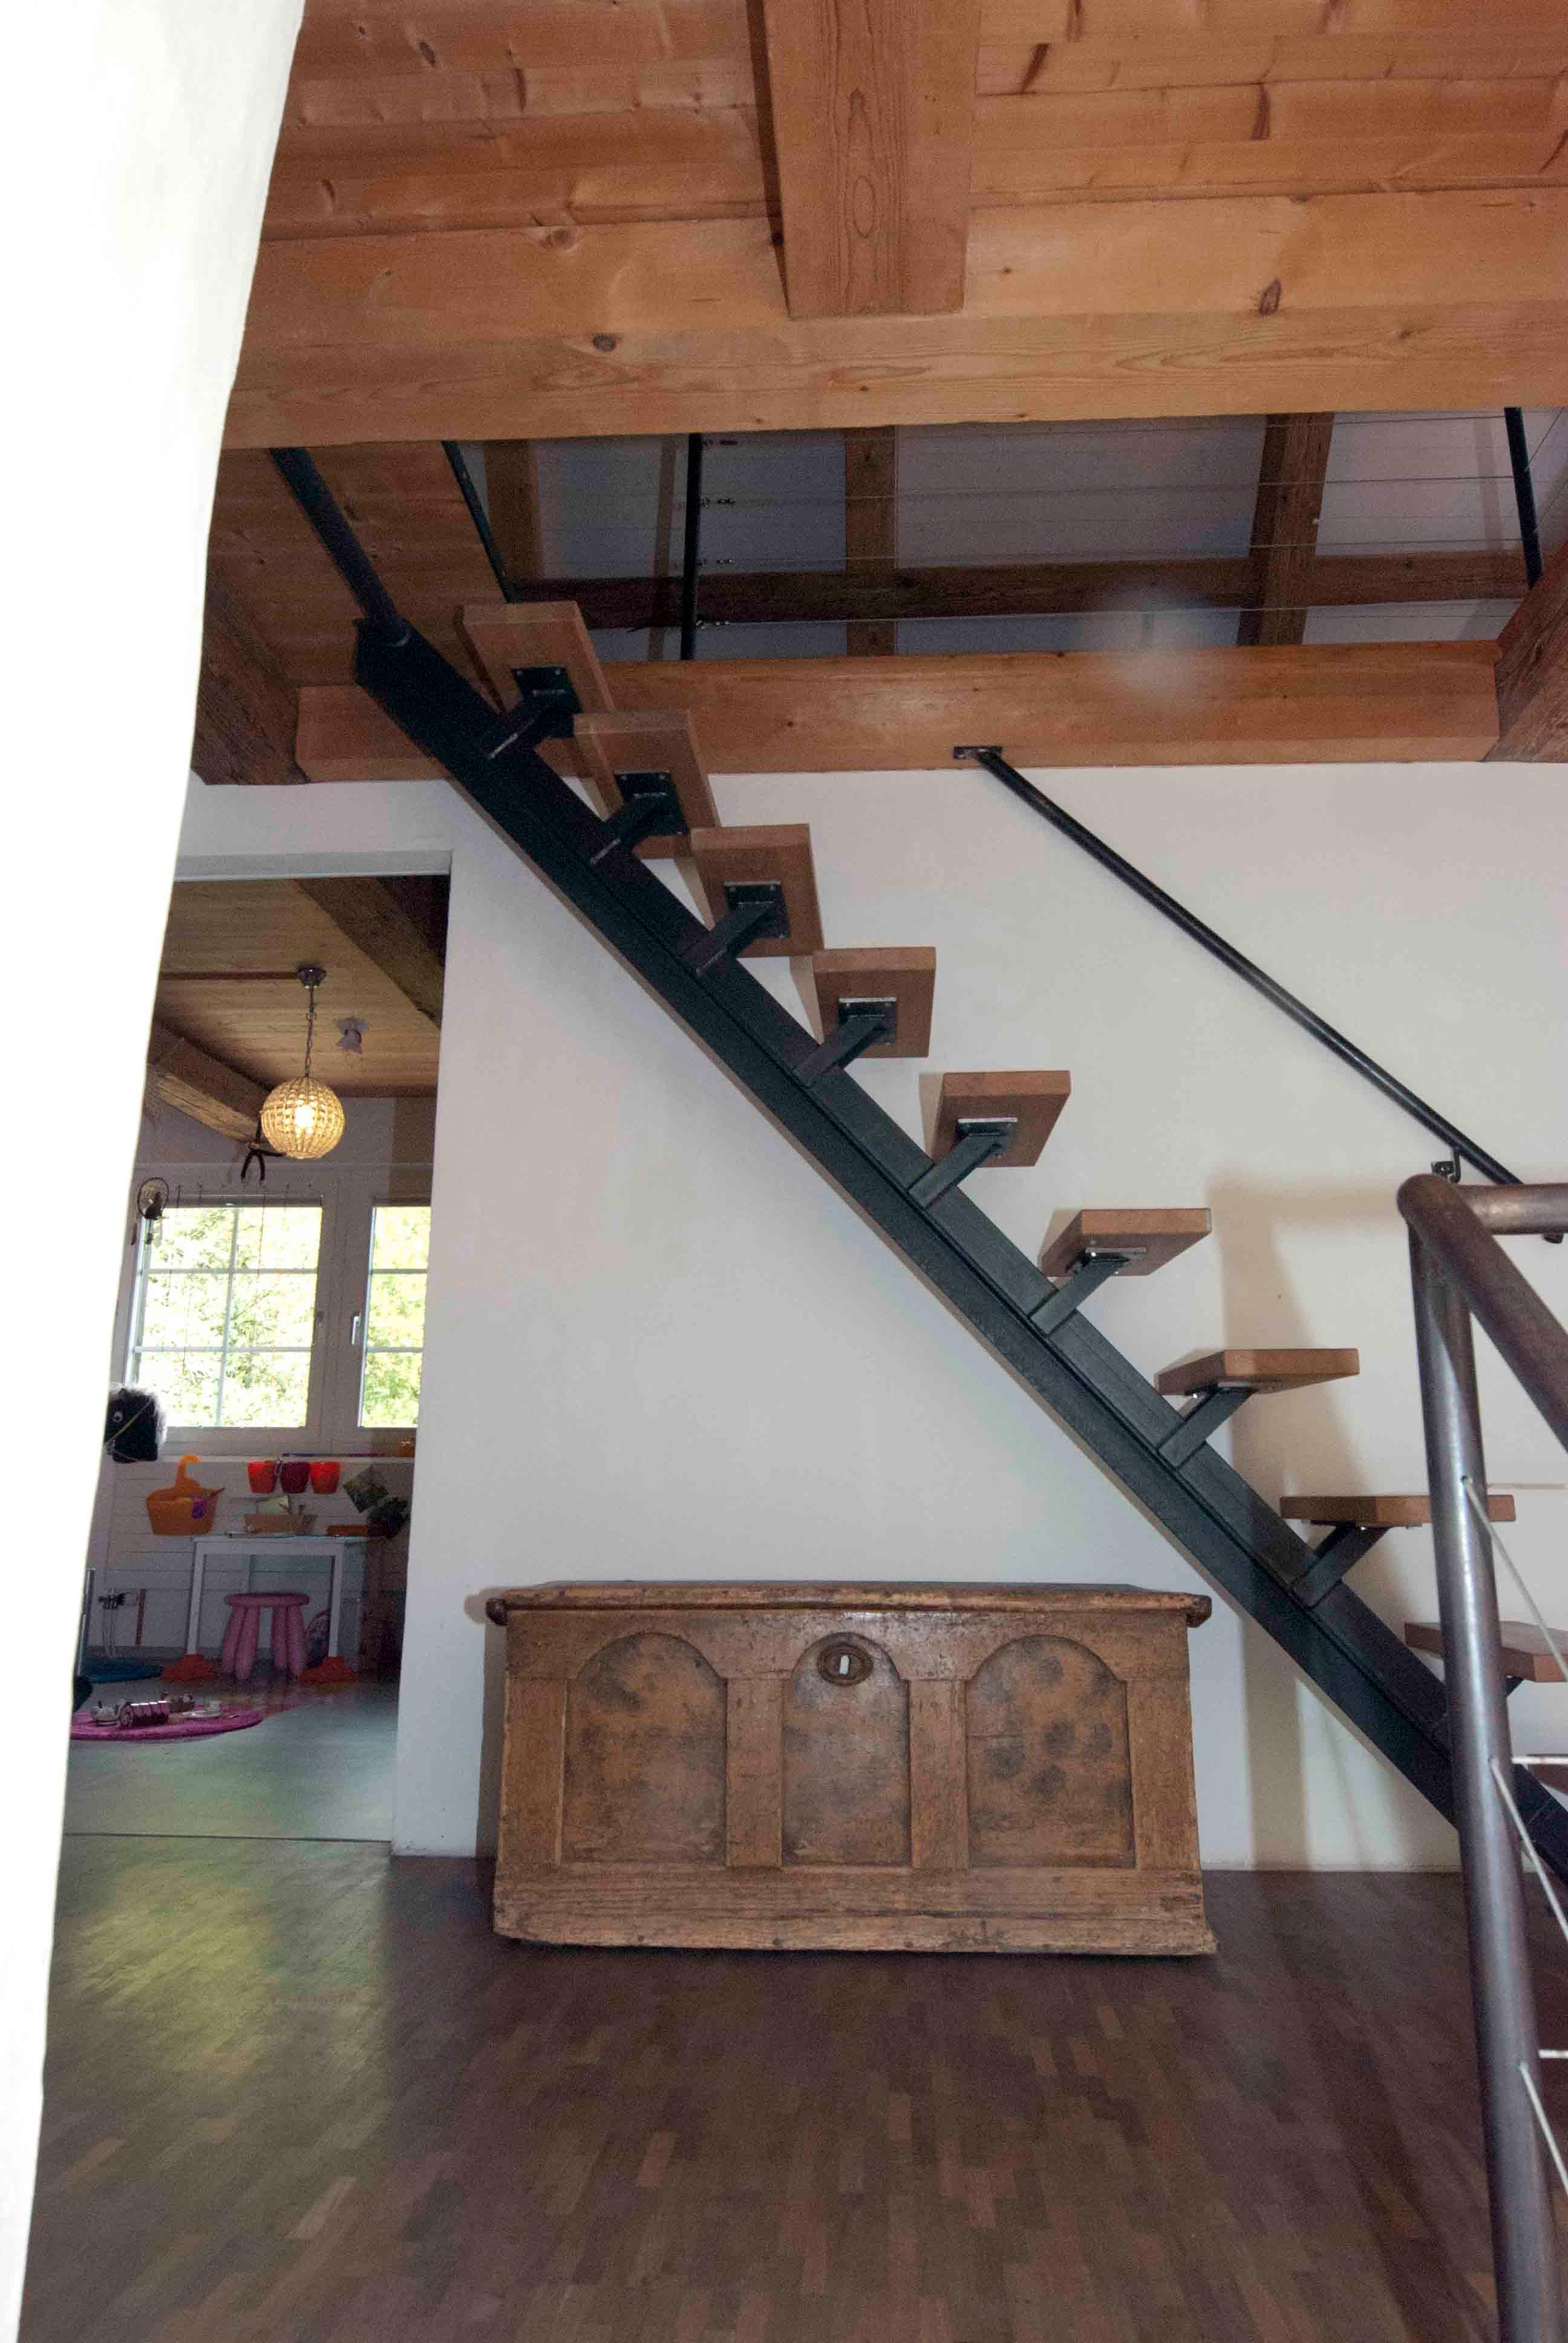  Architektur-Reportage: Umbau alte Mühle: Eine weitere Treppe führt auf den Estrich